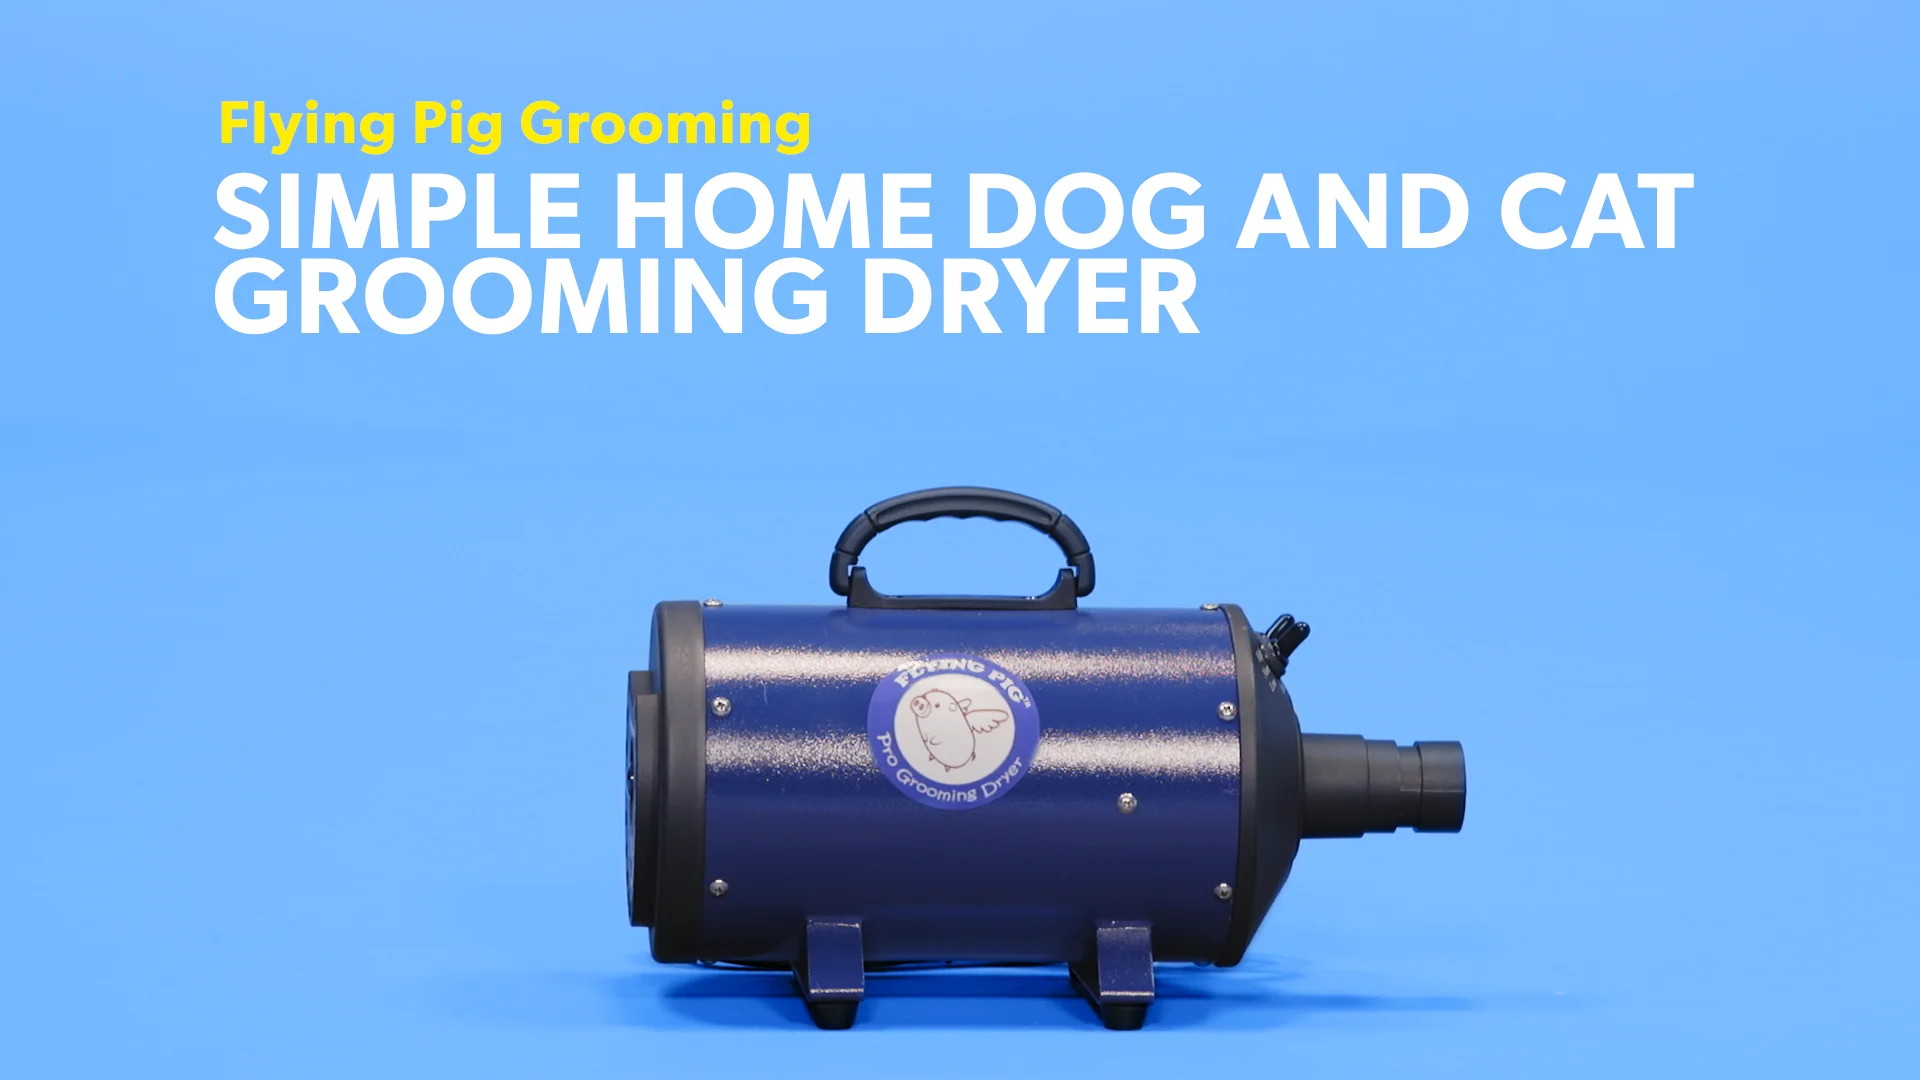 flying pig grooming dryer